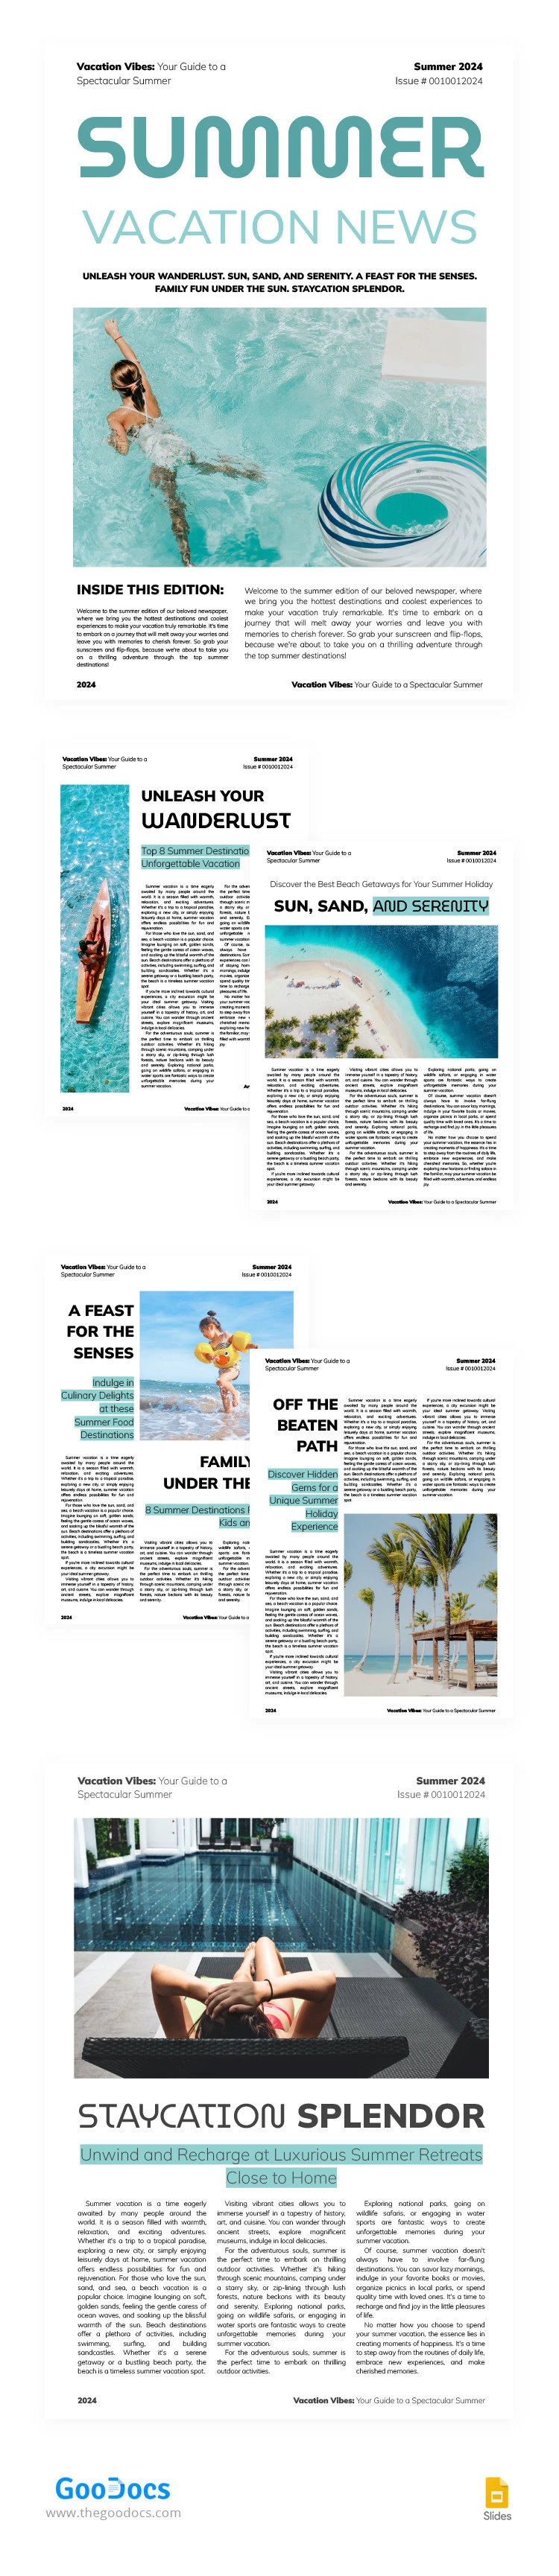 Modern Summer Vacation Newspaper - free Google Docs Template - 10066339